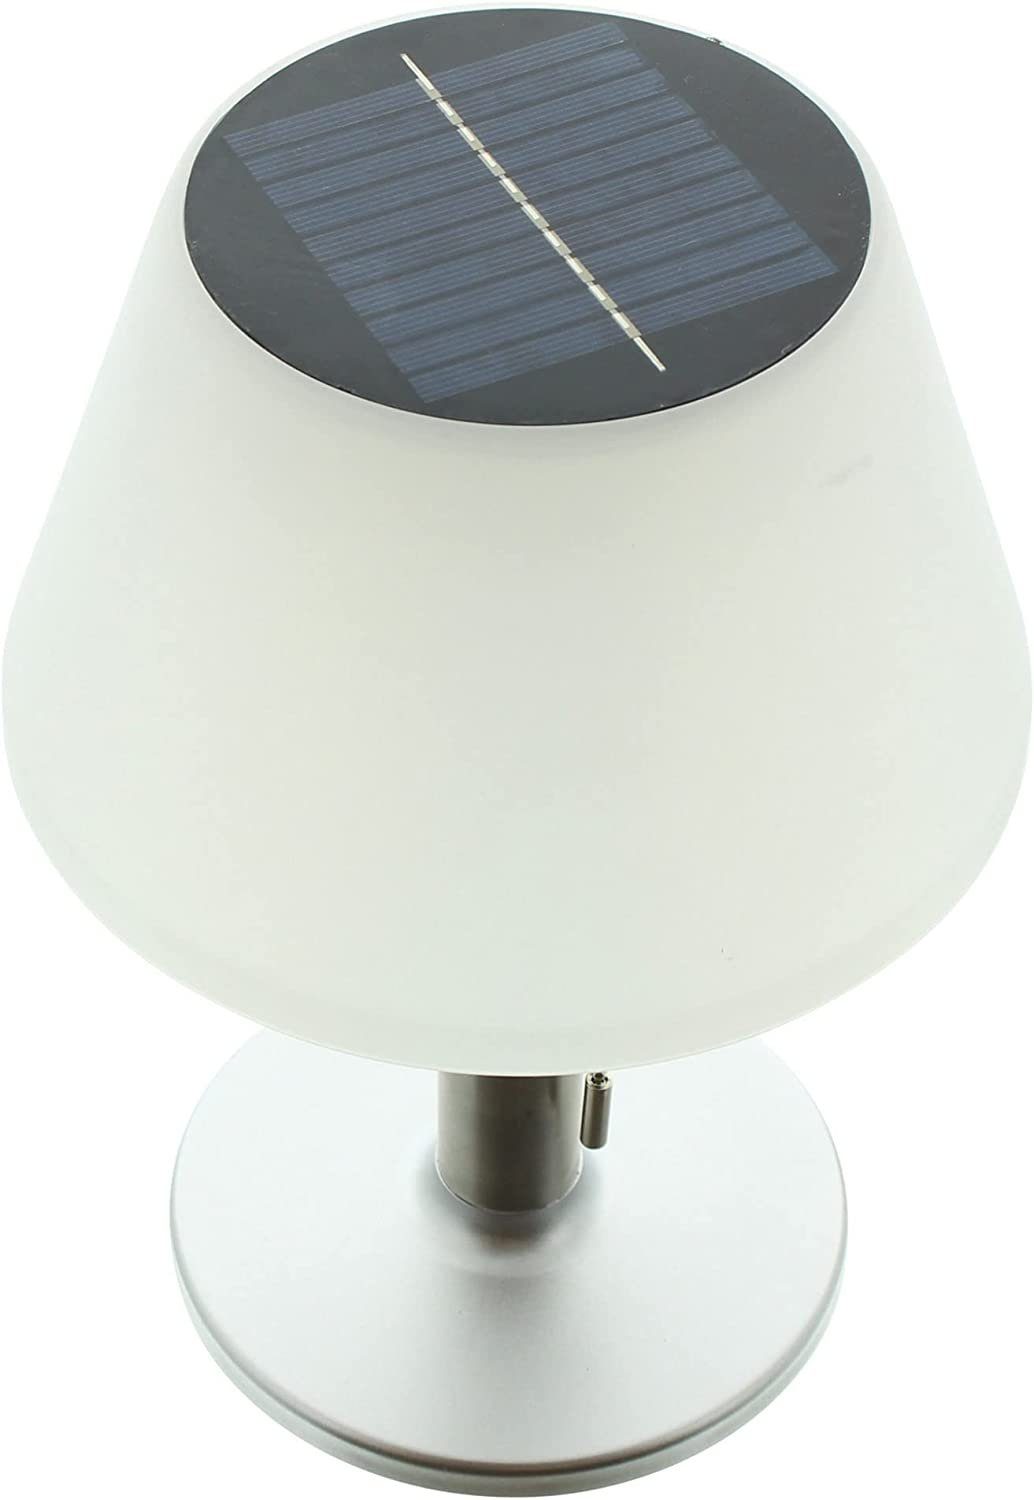 LED-Tischlampe, Tischleuchte warmweiß, warmweiß, integriert, matt, fest Lampenschirm Außen-Tischleuchte in Dekoleidenschaft 3 Helligkeitsstufen, Stimmungslicht LED silber in weiß, Design "Solar", LED Tischleuchte,